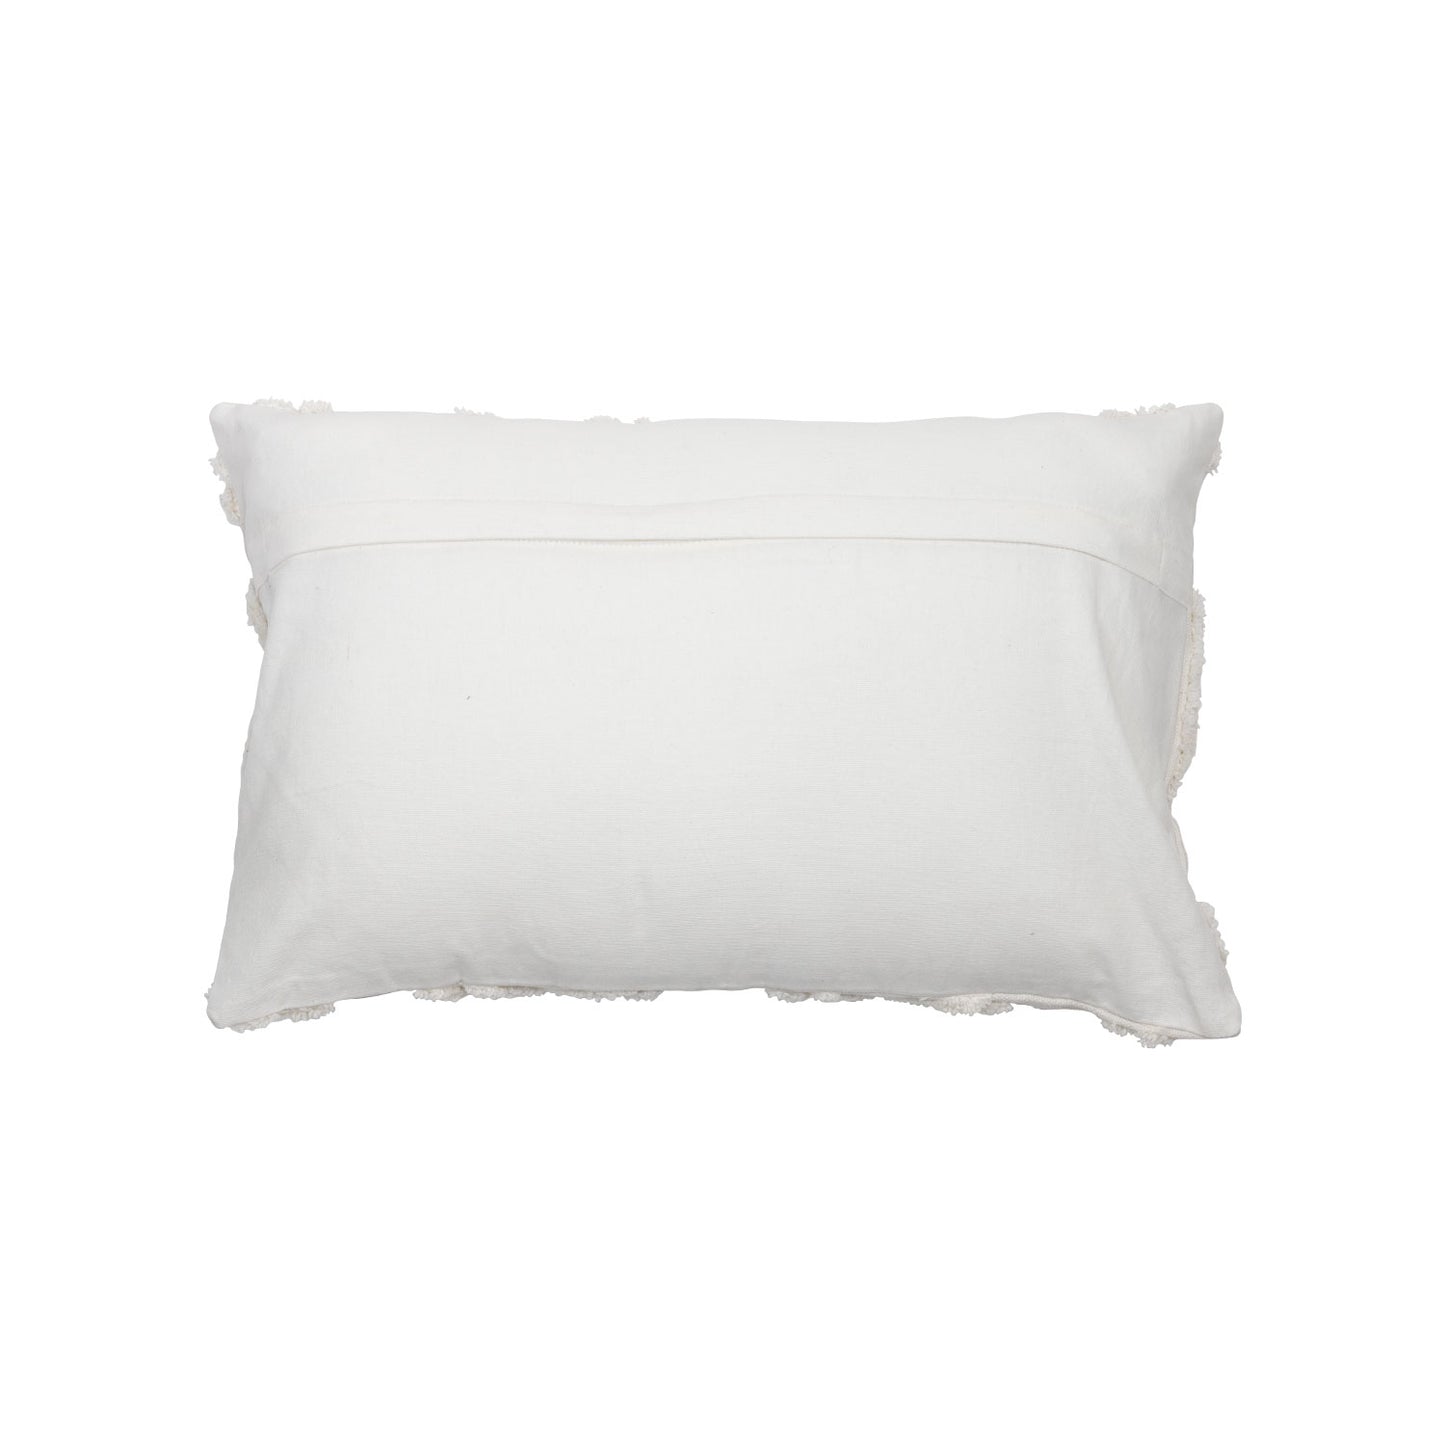 Gila Pillow - 14x22